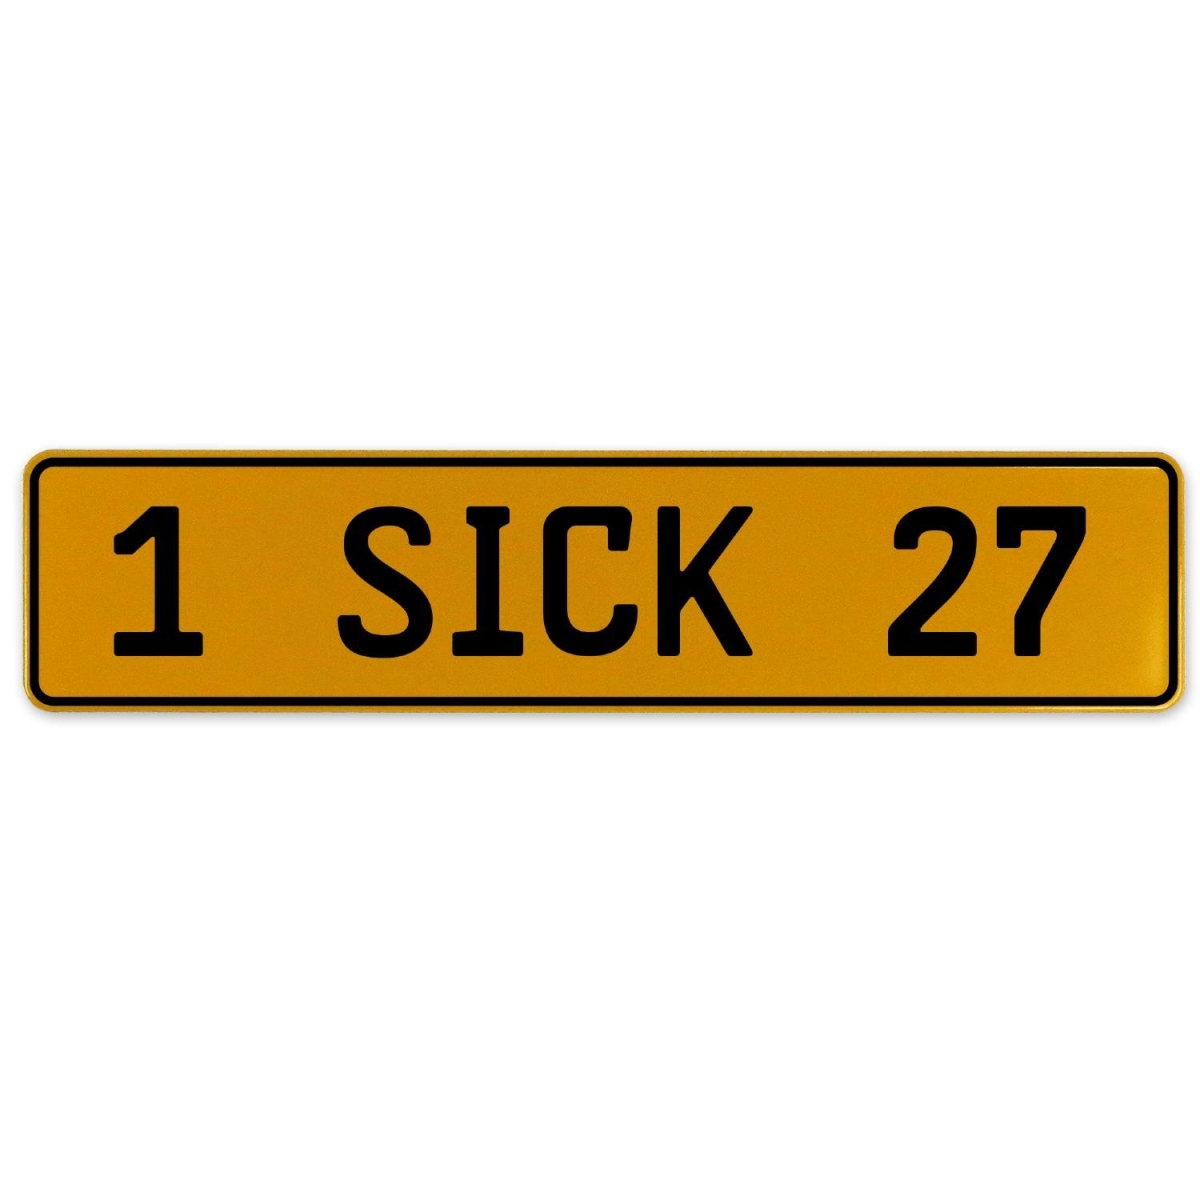 1 Sick 27 - Yellow Aluminum Street Sign Mancave Euro Plate Name Door Sign Wall